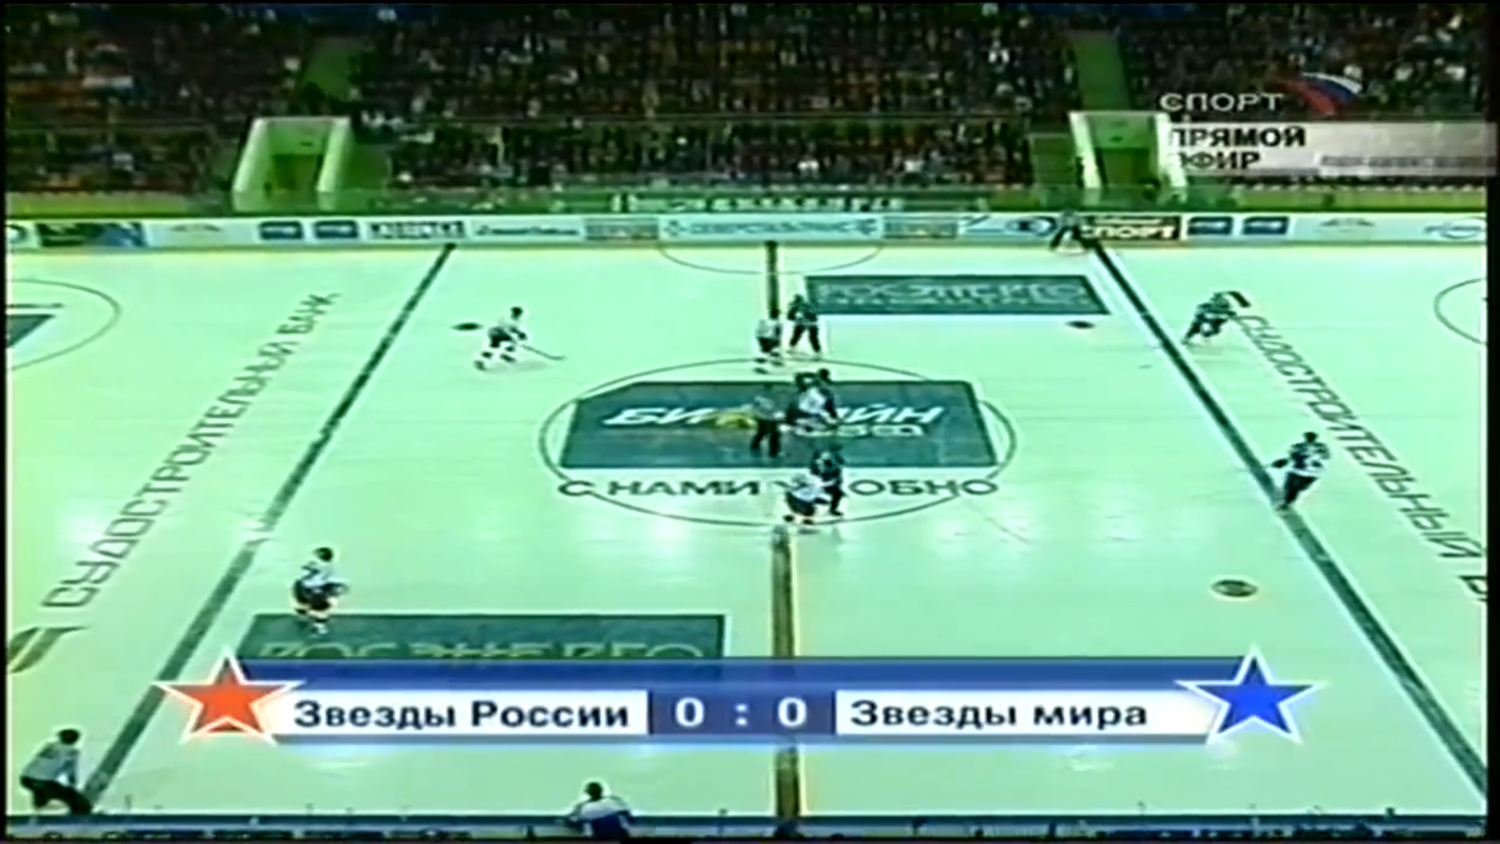 Матч звезд. Звезды России - Звезды НХЛ. 11.12.2004